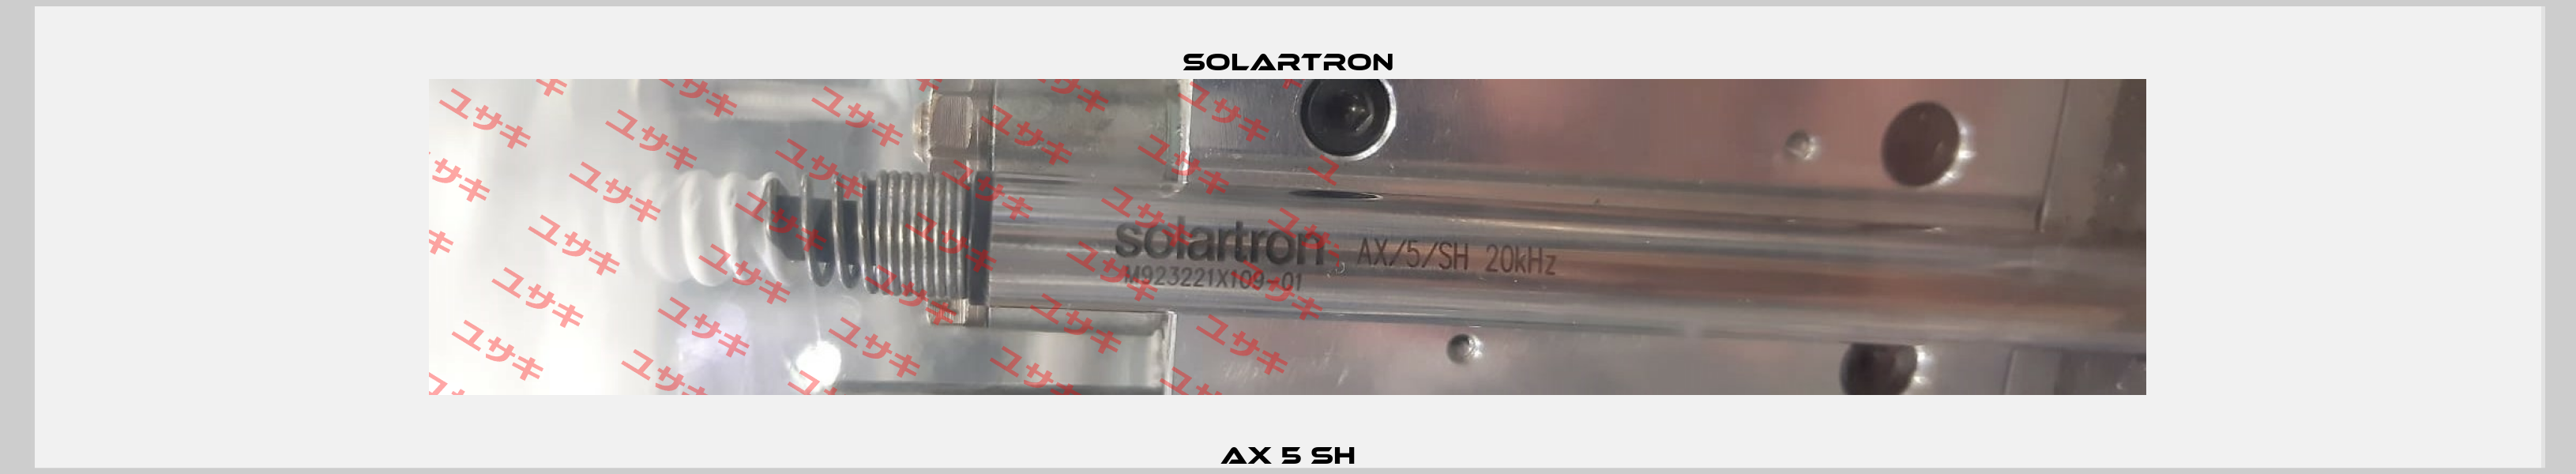 AX 5 SH Solartron